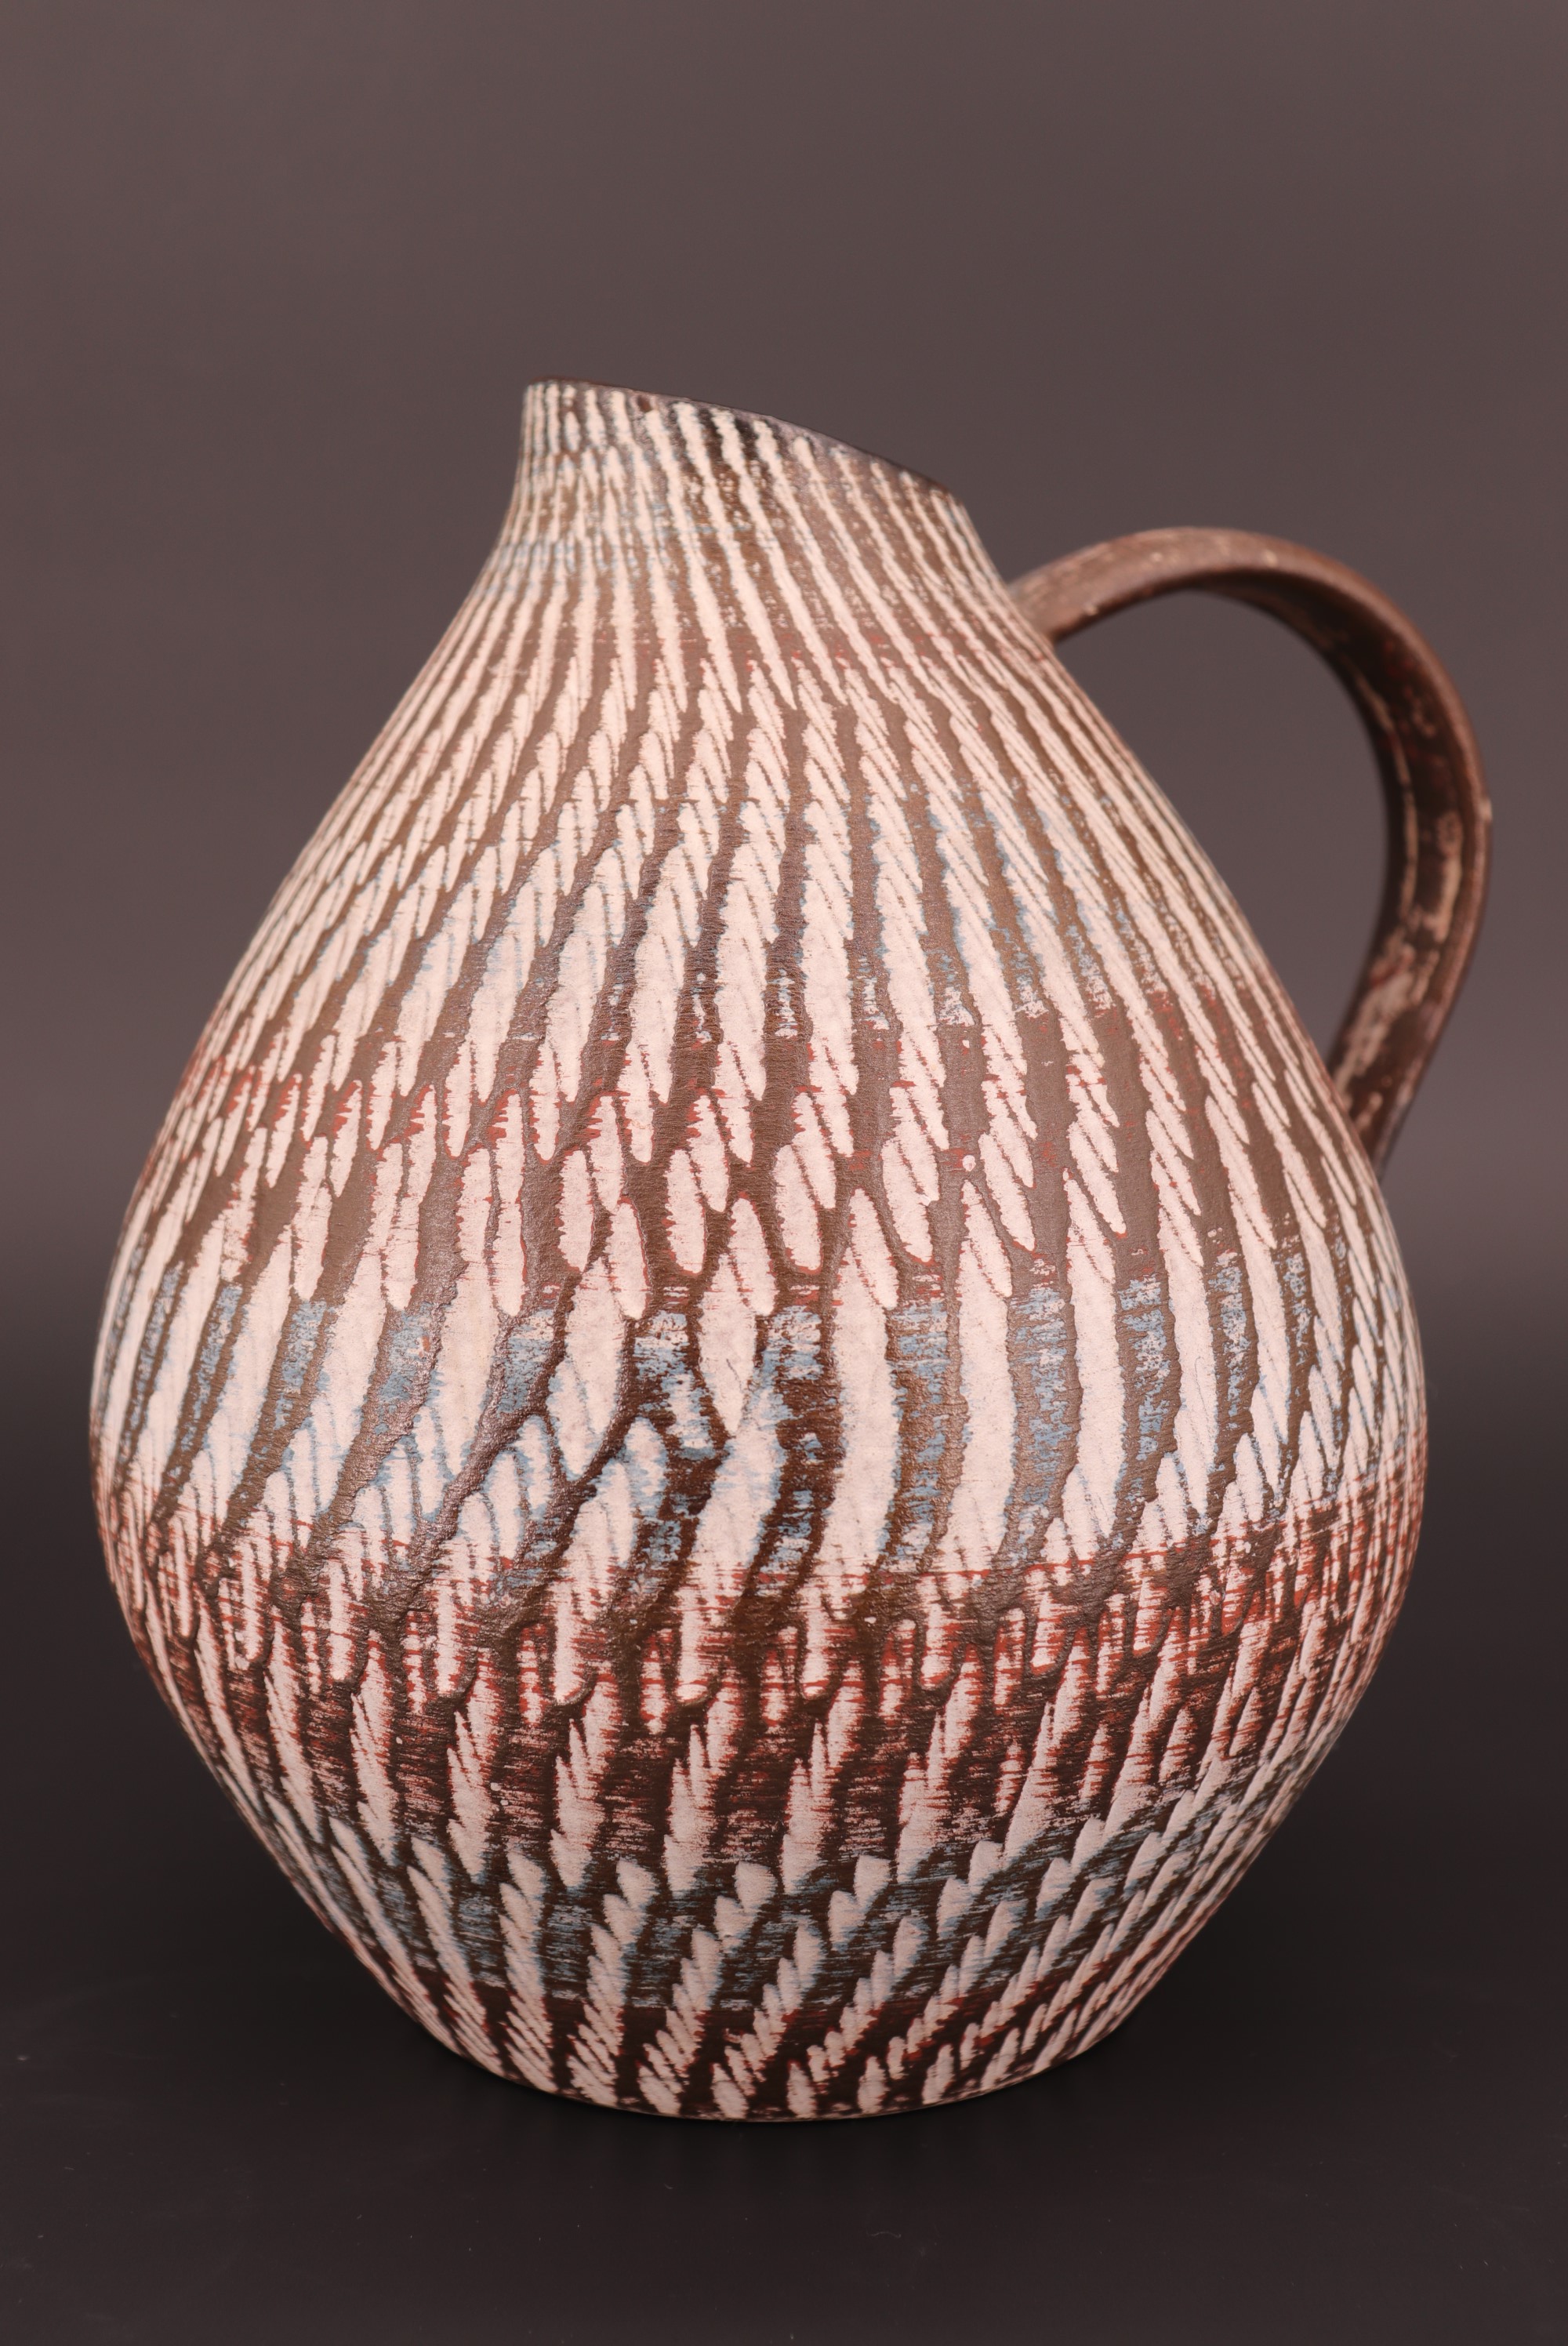 A Dee-Cee West German ceramic flower jug, 19 cm